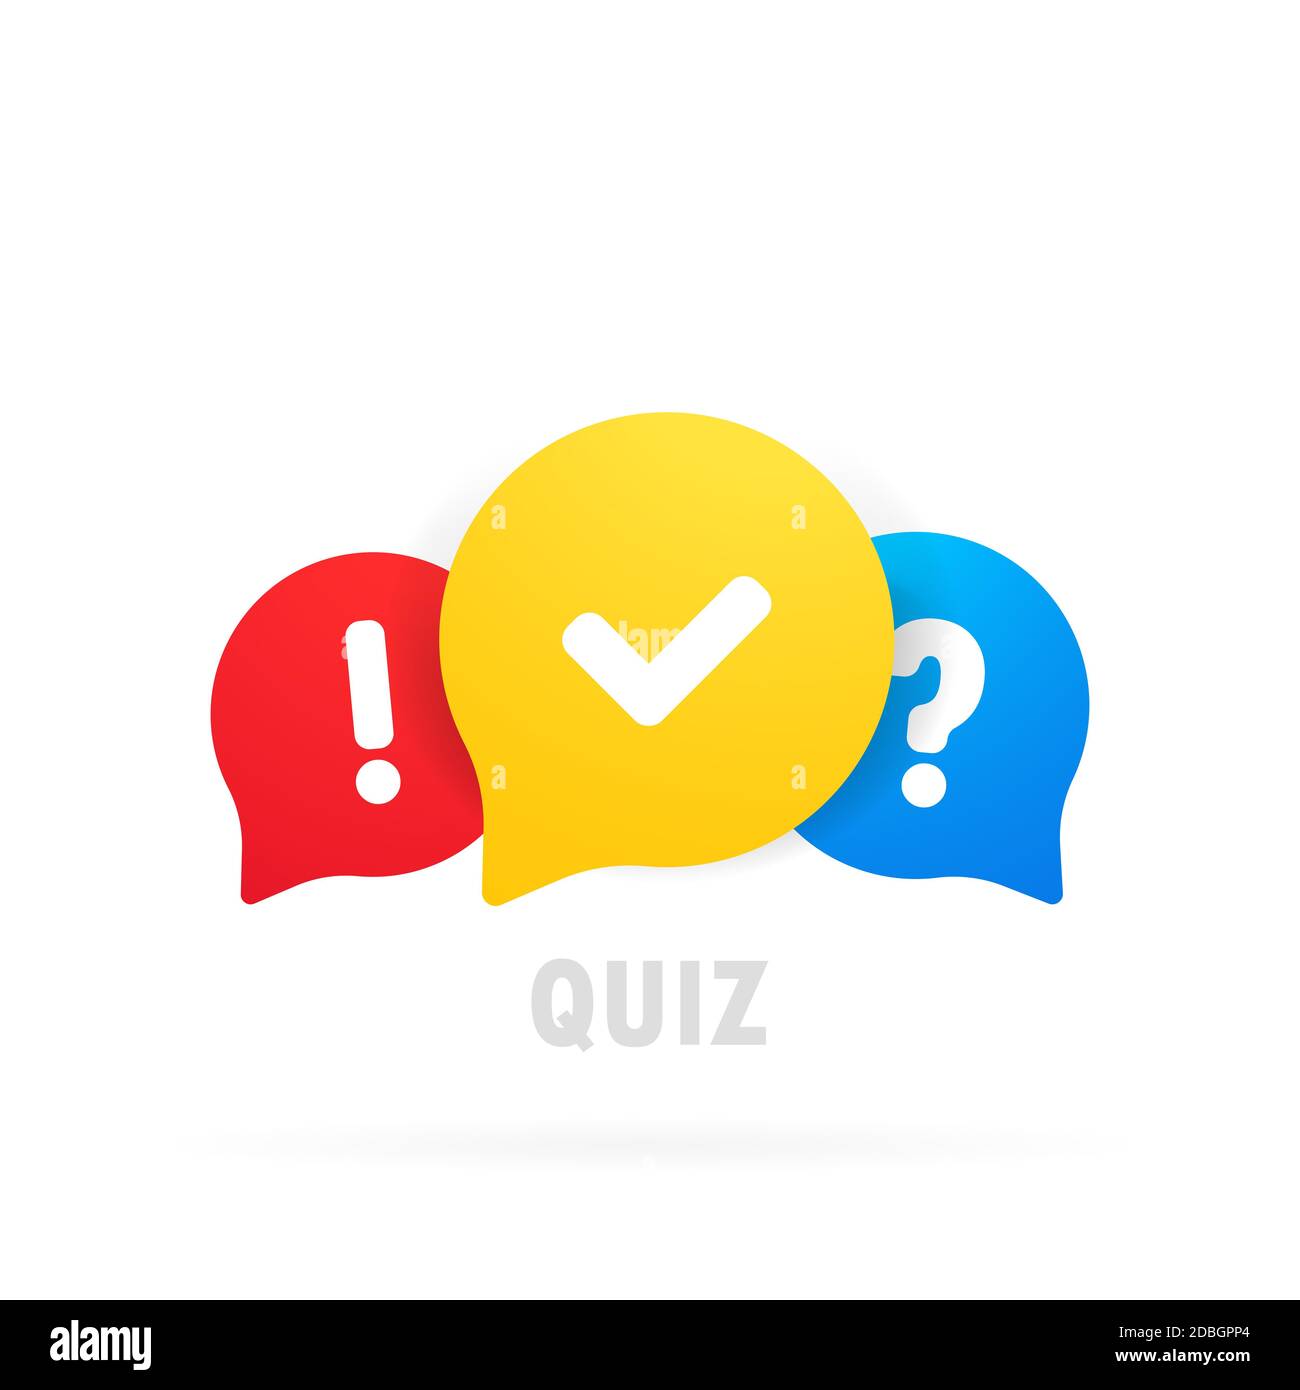 Symbolvektor für Quiz-Logo. Blasenreden mit Fragen und Markierungszeichen. Konzept der sozialen Kommunikation, Chat, Interview, Abstimmung, Diskussion Stock Vektor